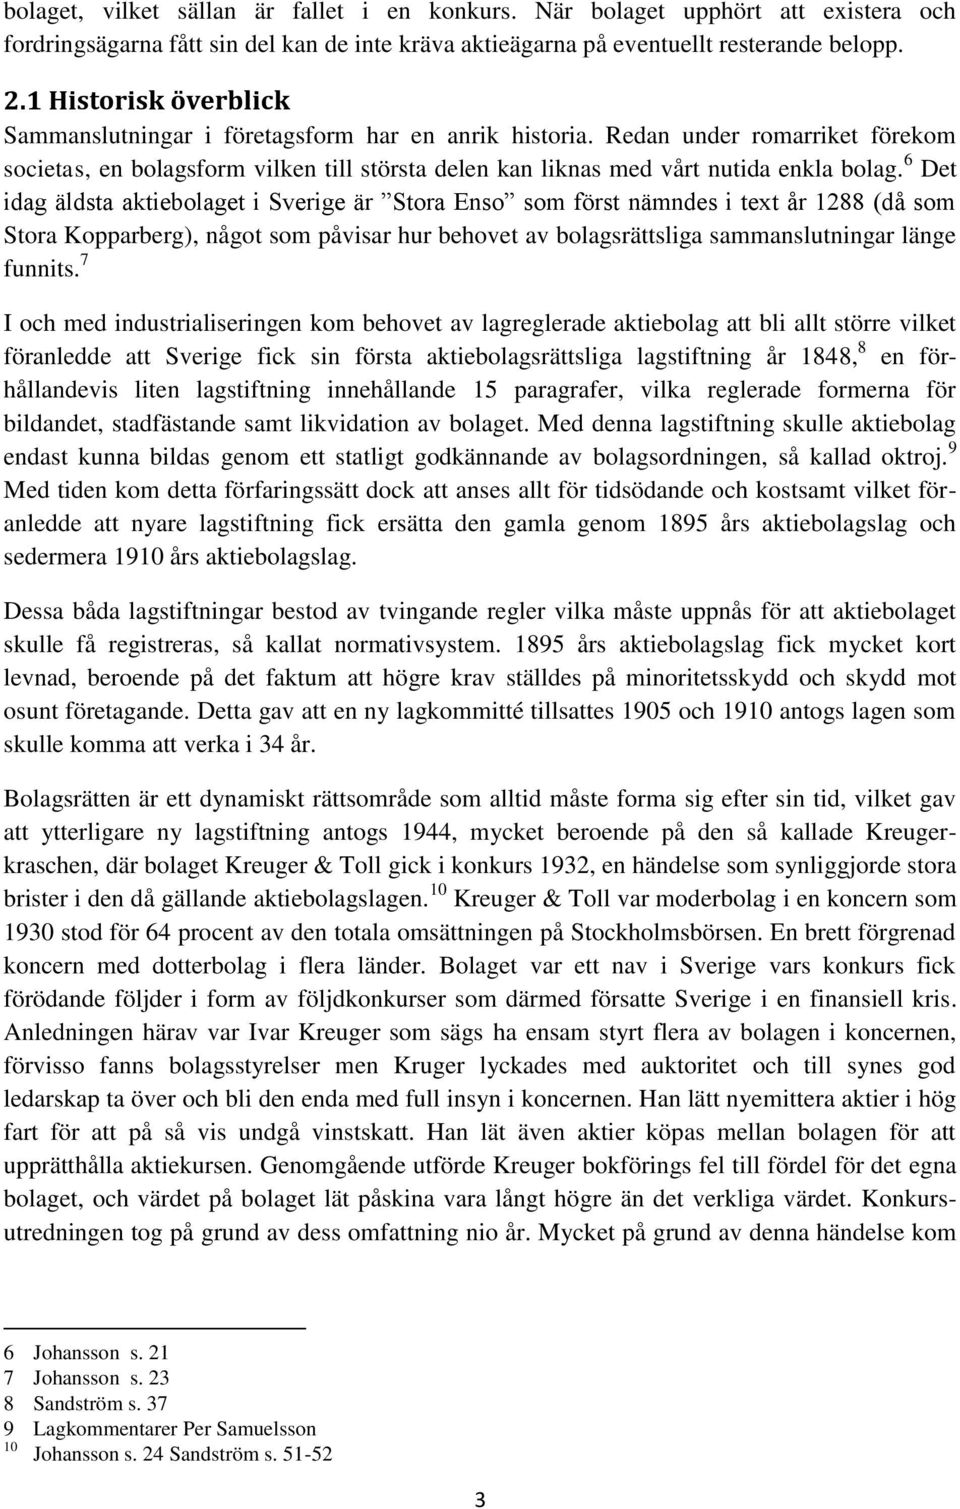 6 Det idag äldsta aktiebolaget i Sverige är Stora Enso som först nämndes i text år 1288 (då som Stora Kopparberg), något som påvisar hur behovet av bolagsrättsliga sammanslutningar länge funnits.